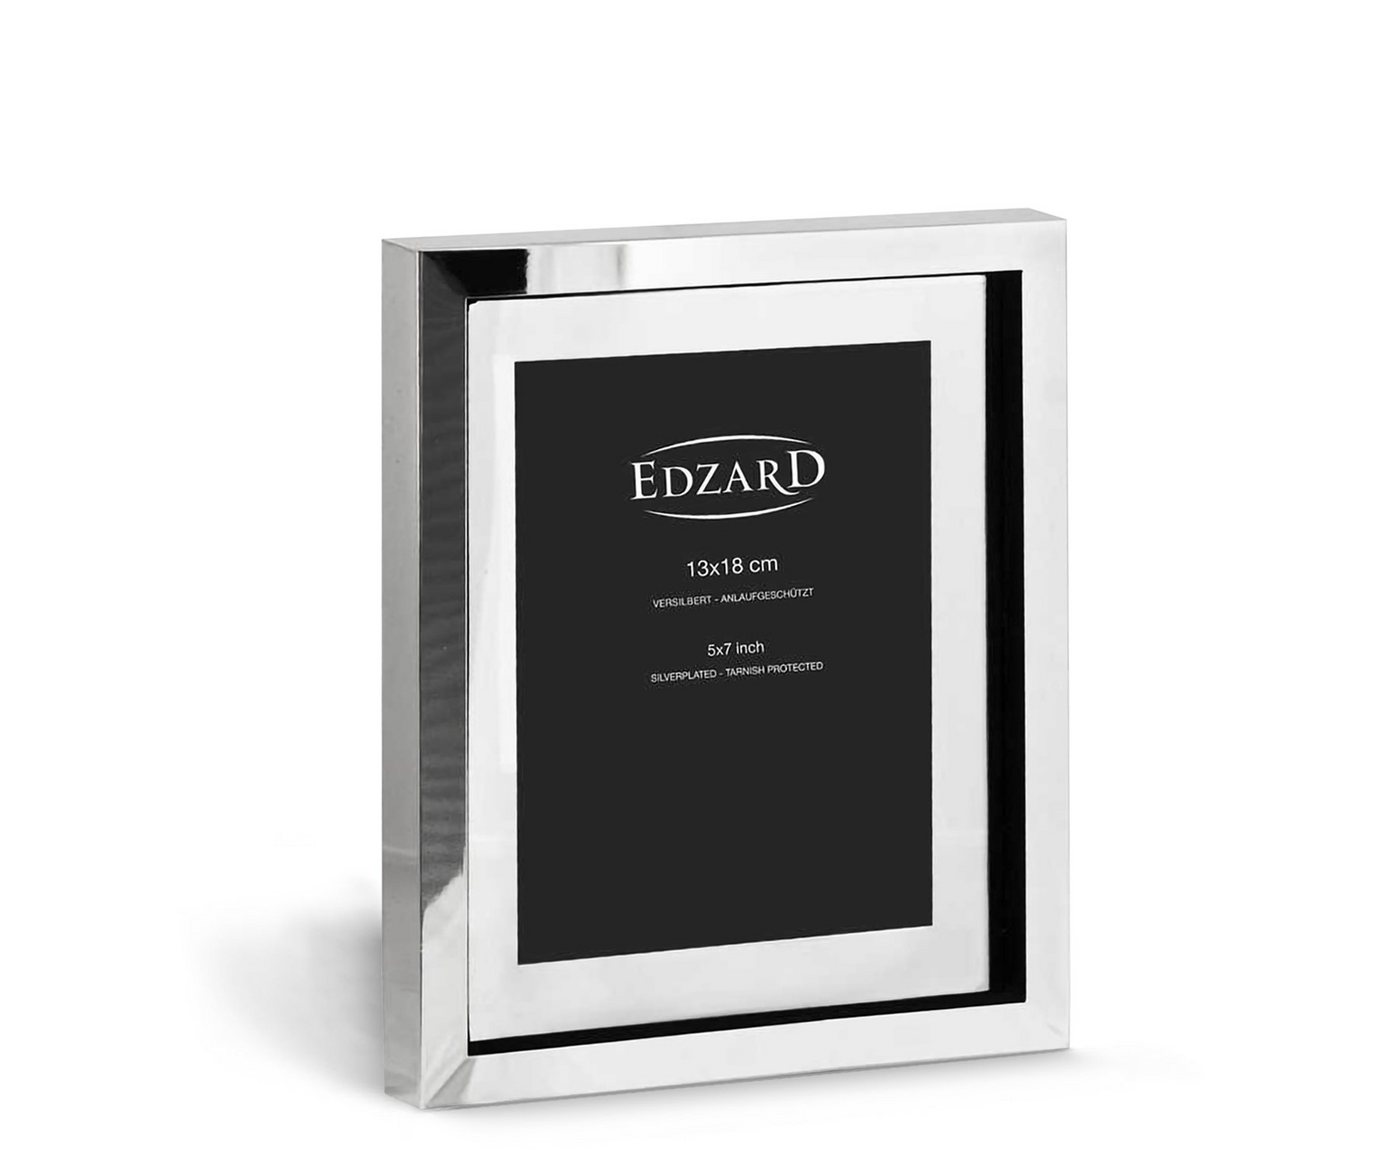 EDZARD Bilderrahmen Caserta, versilbert und anlaufgeschützt, für 13x18 cm Bilder - Fotorahmen von EDZARD